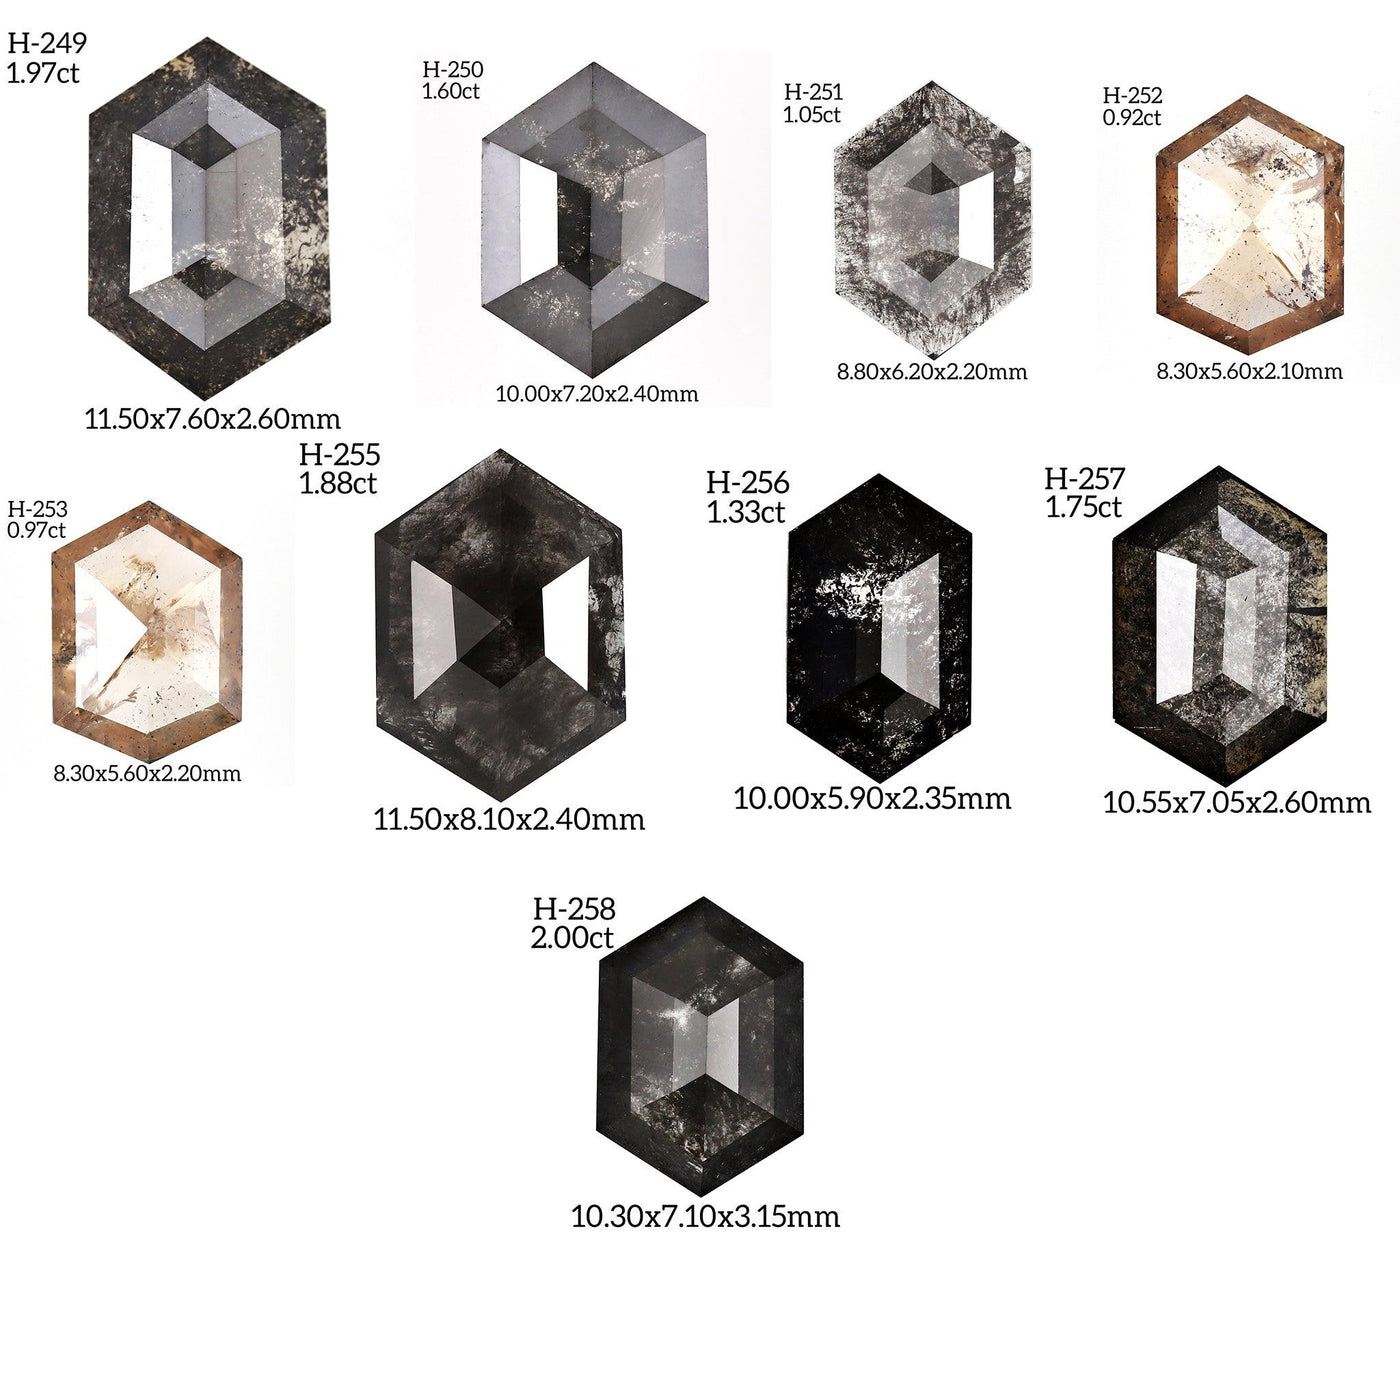 H258 - Salt and pepper hexagon diamond